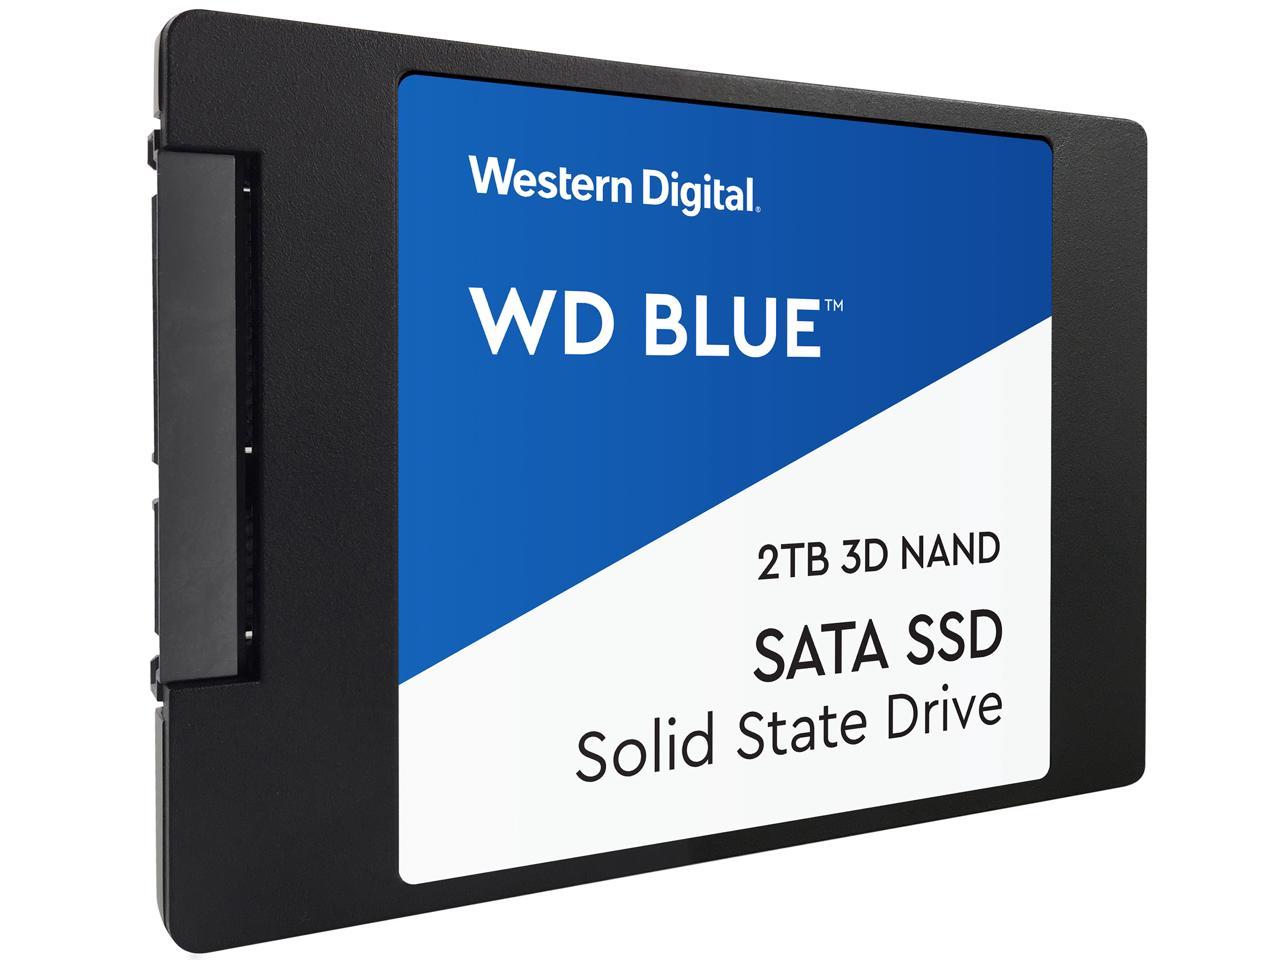 WD Blue 2TB Internal SSD [2.5", SATA III, 3D NAND] $169.99